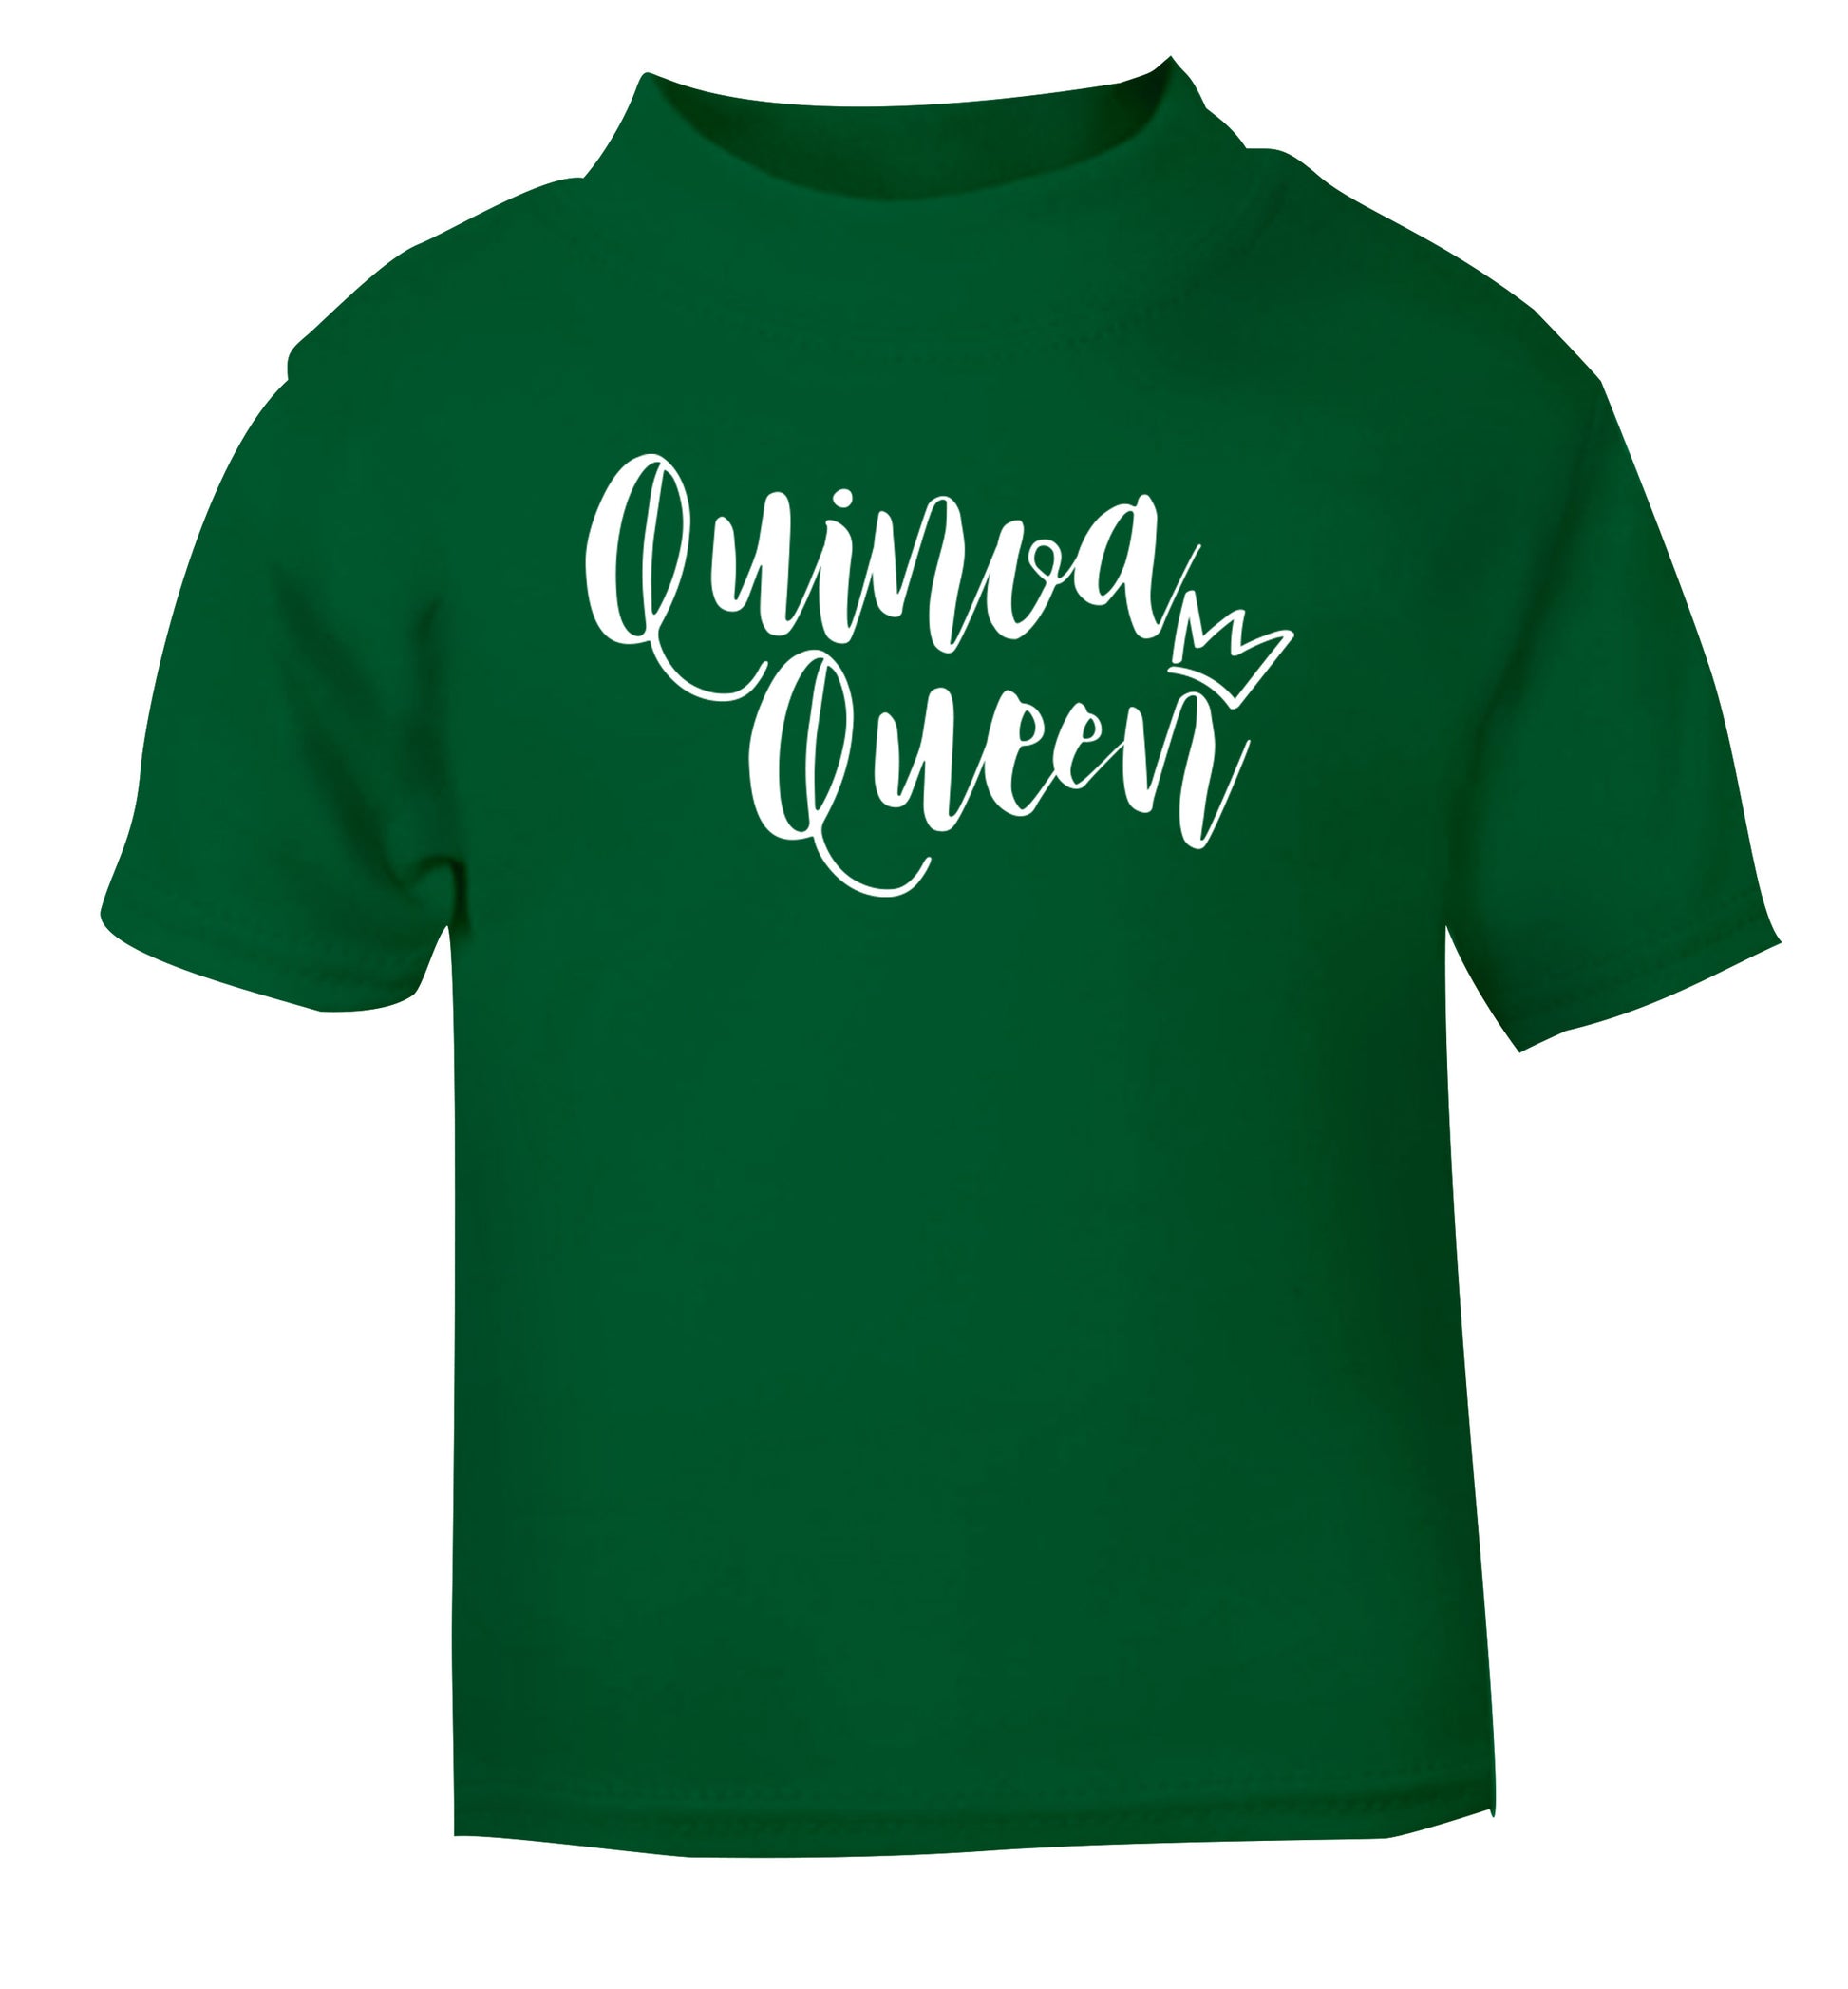 Quinoa Queen green Baby Toddler Tshirt 2 Years